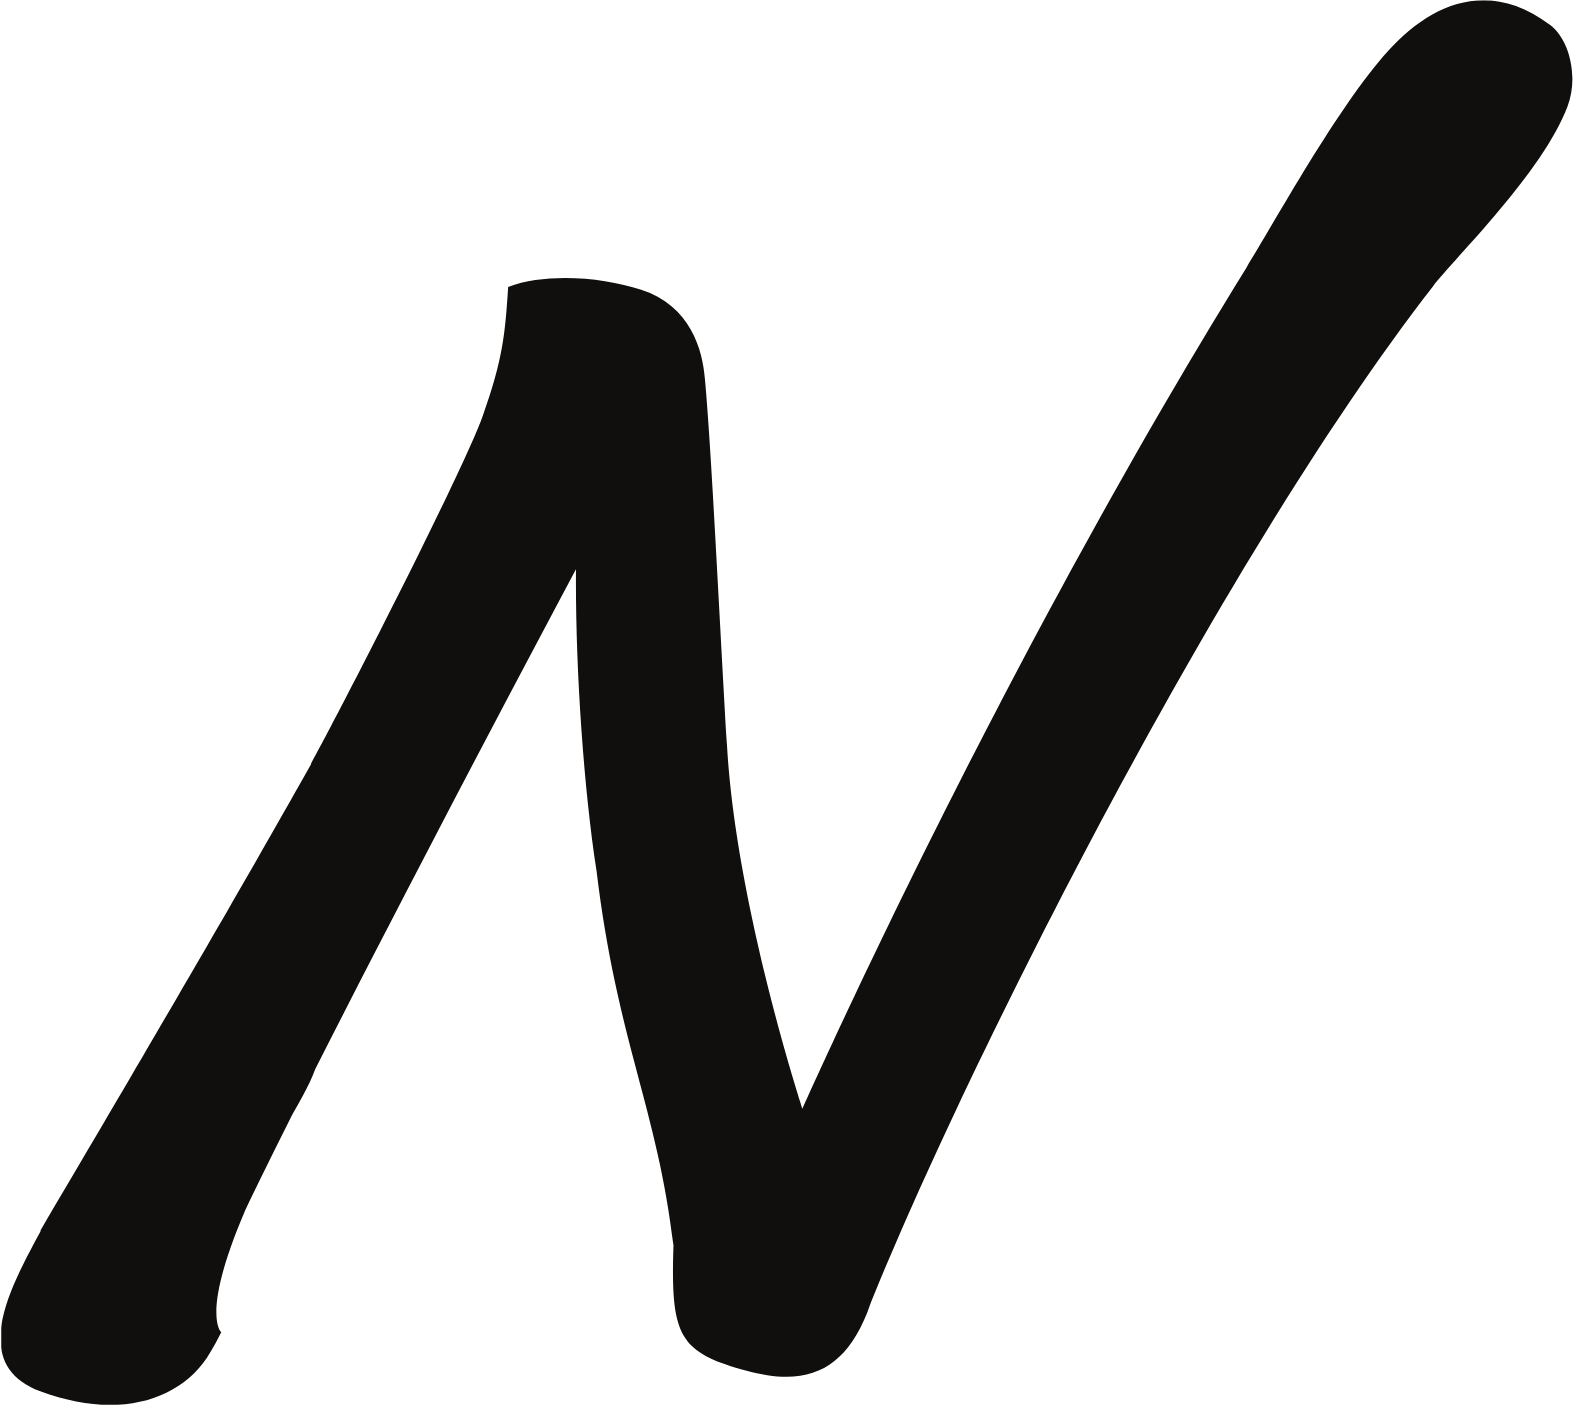 News Corp logo (PNG transparent)